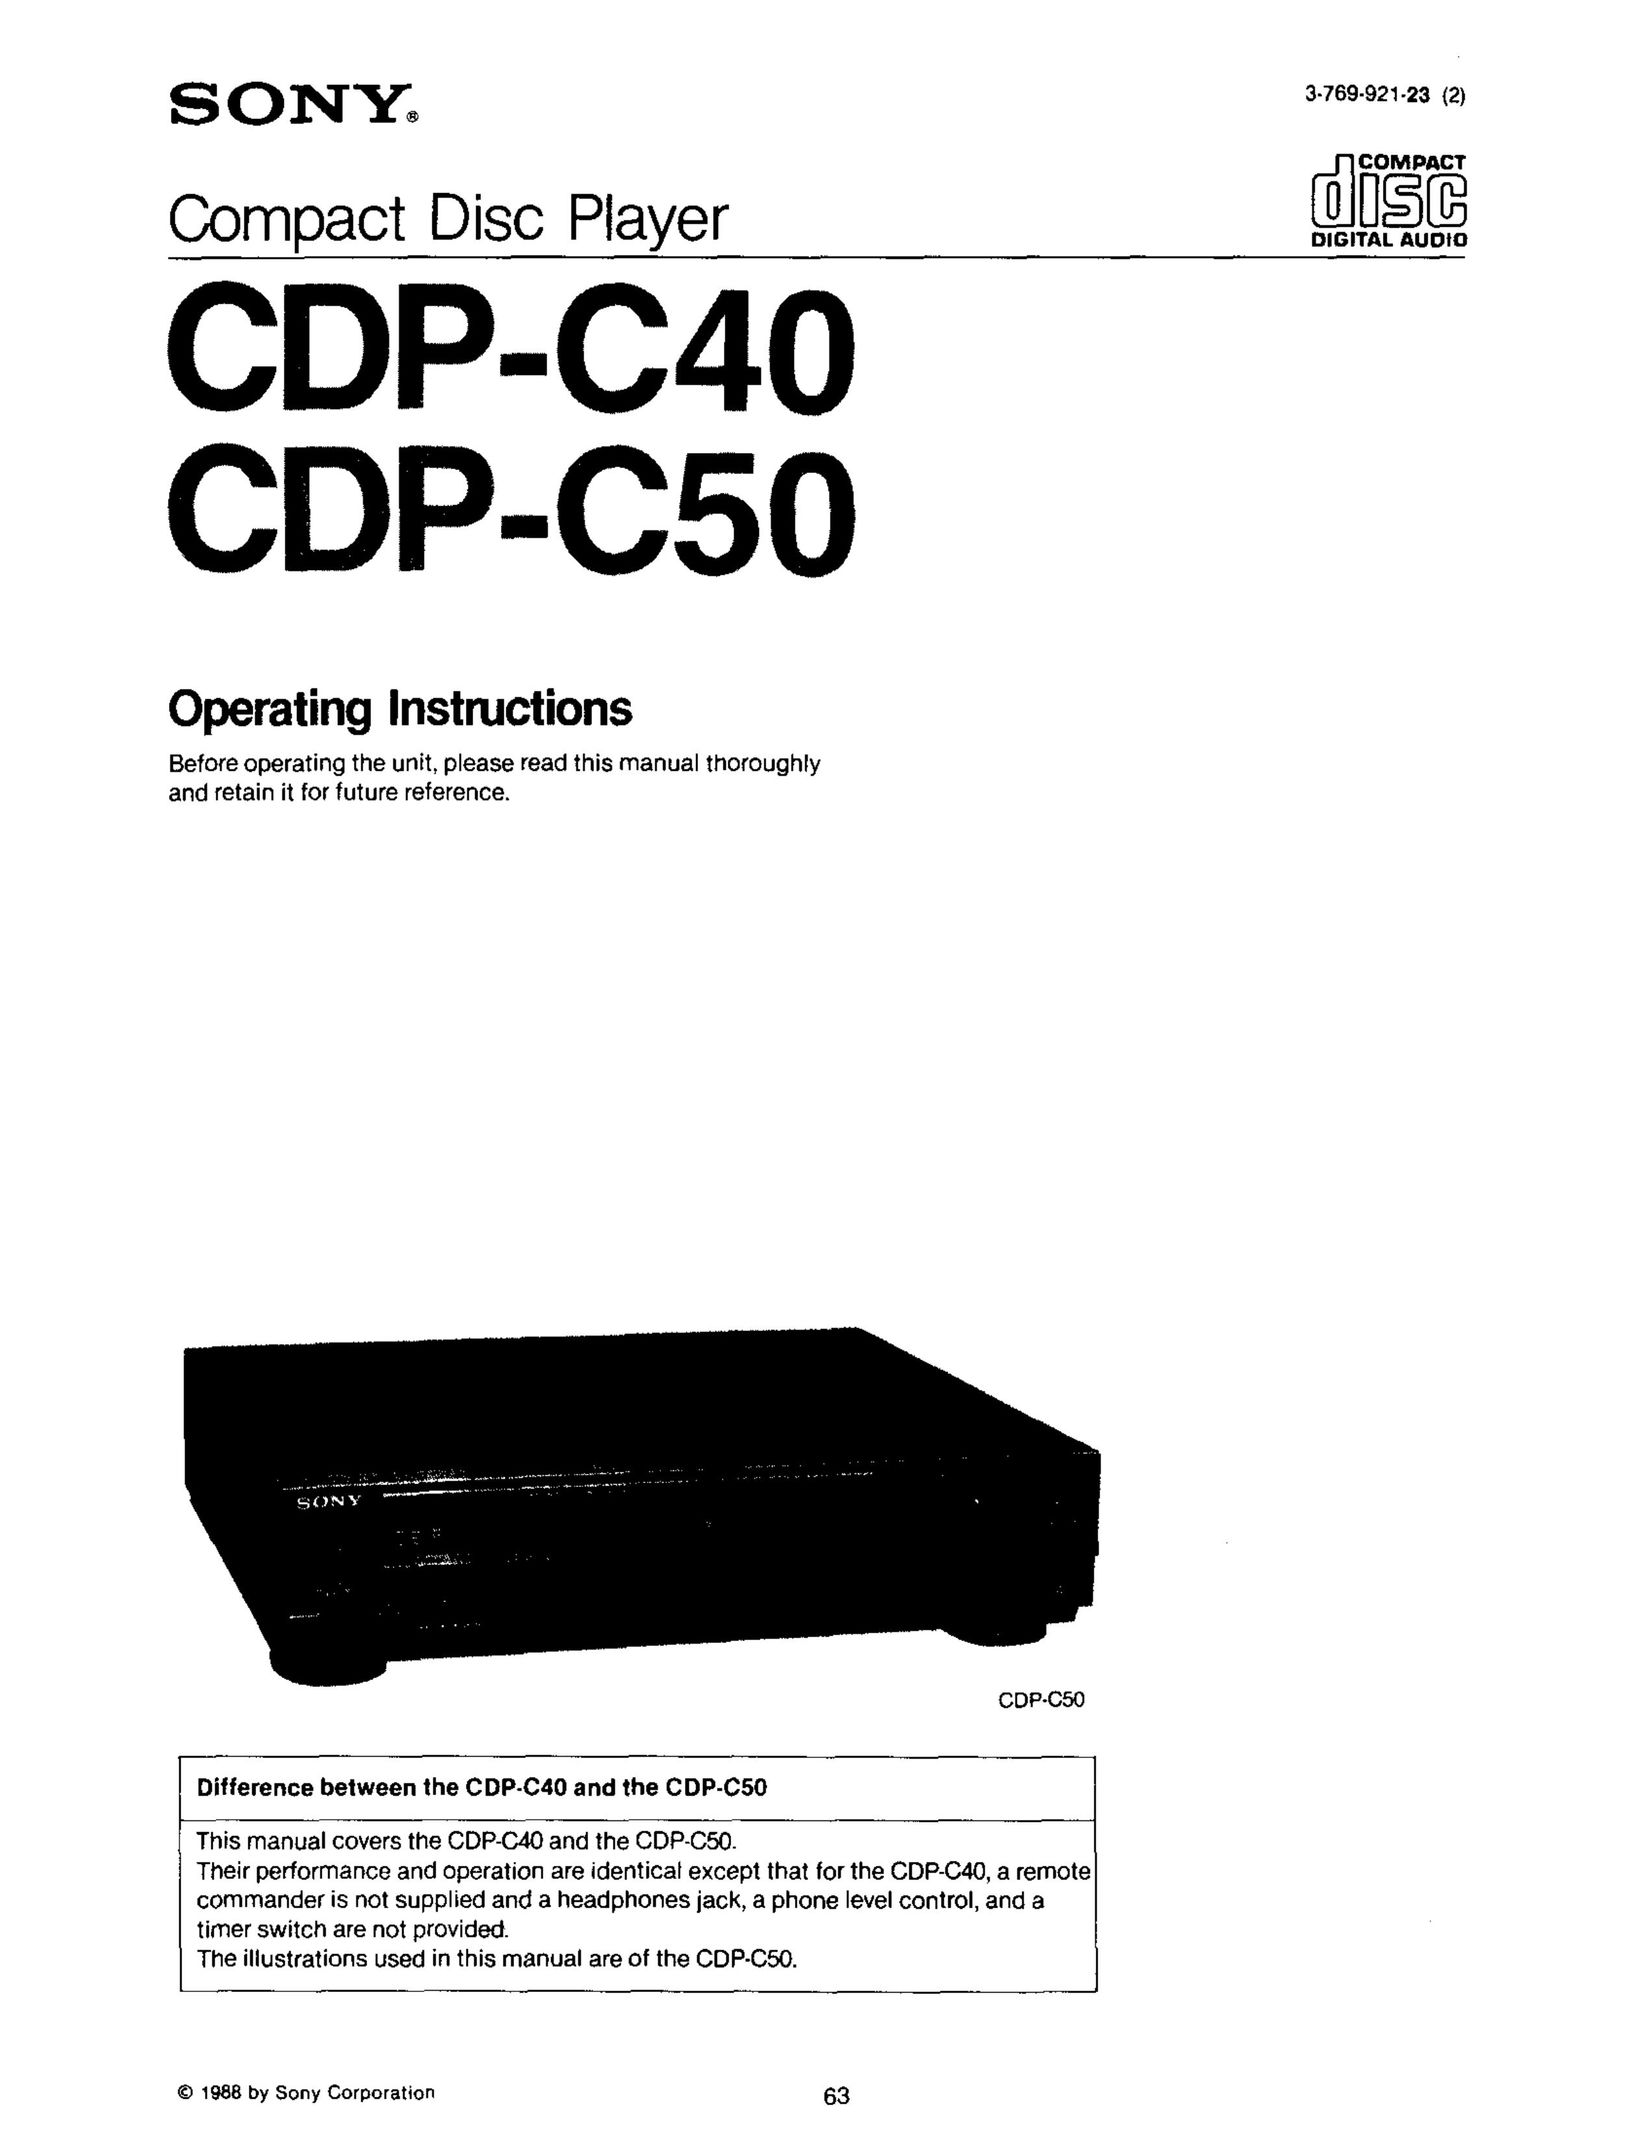 Sony CD-PC50 Speaker User Manual